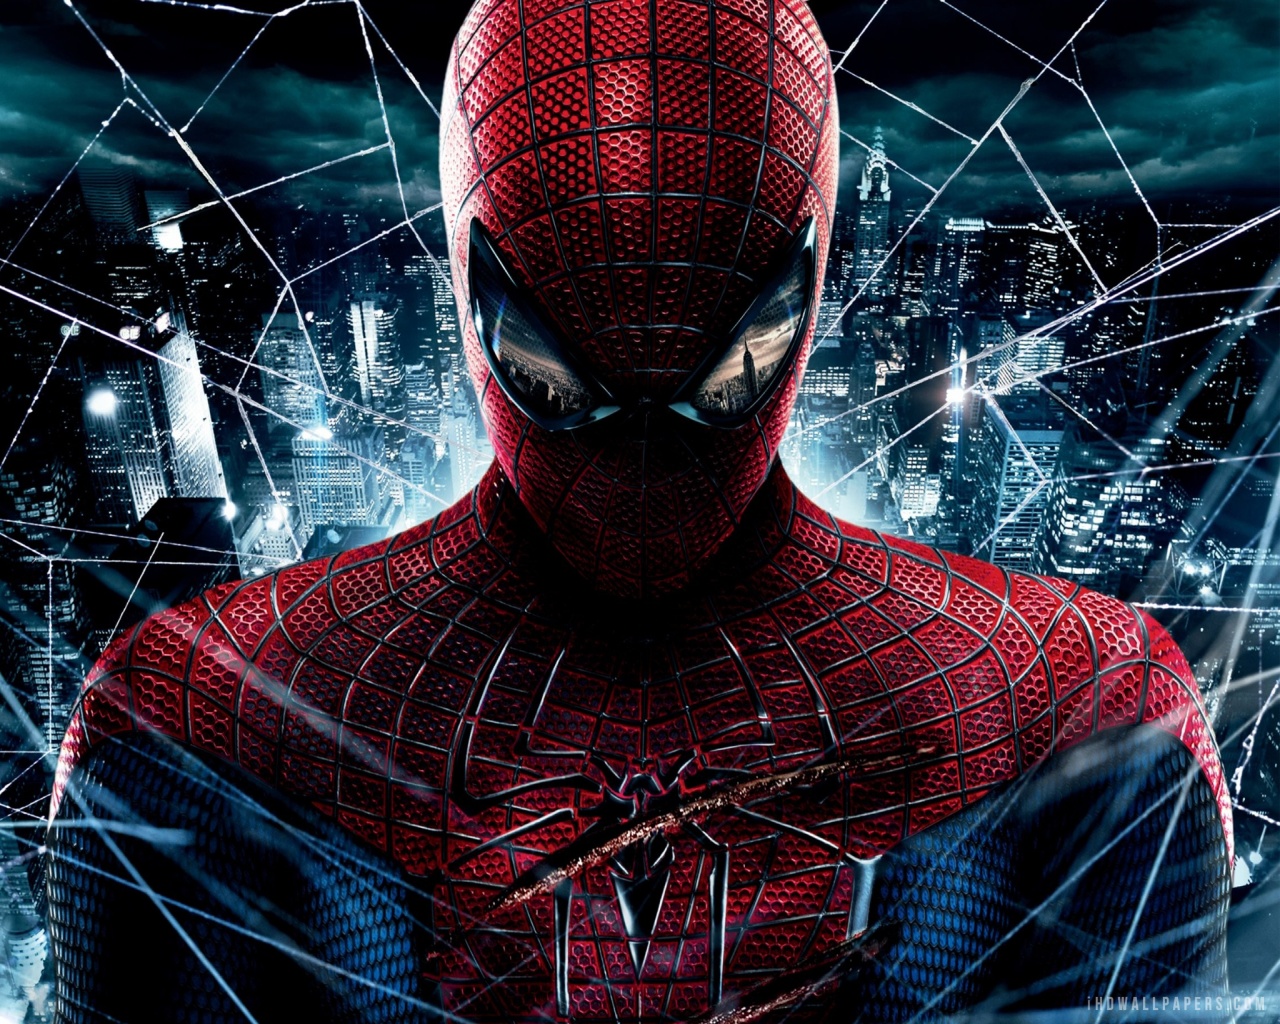  Download Amazing Spider Man WallpaperBackground in 1280x1024 HD